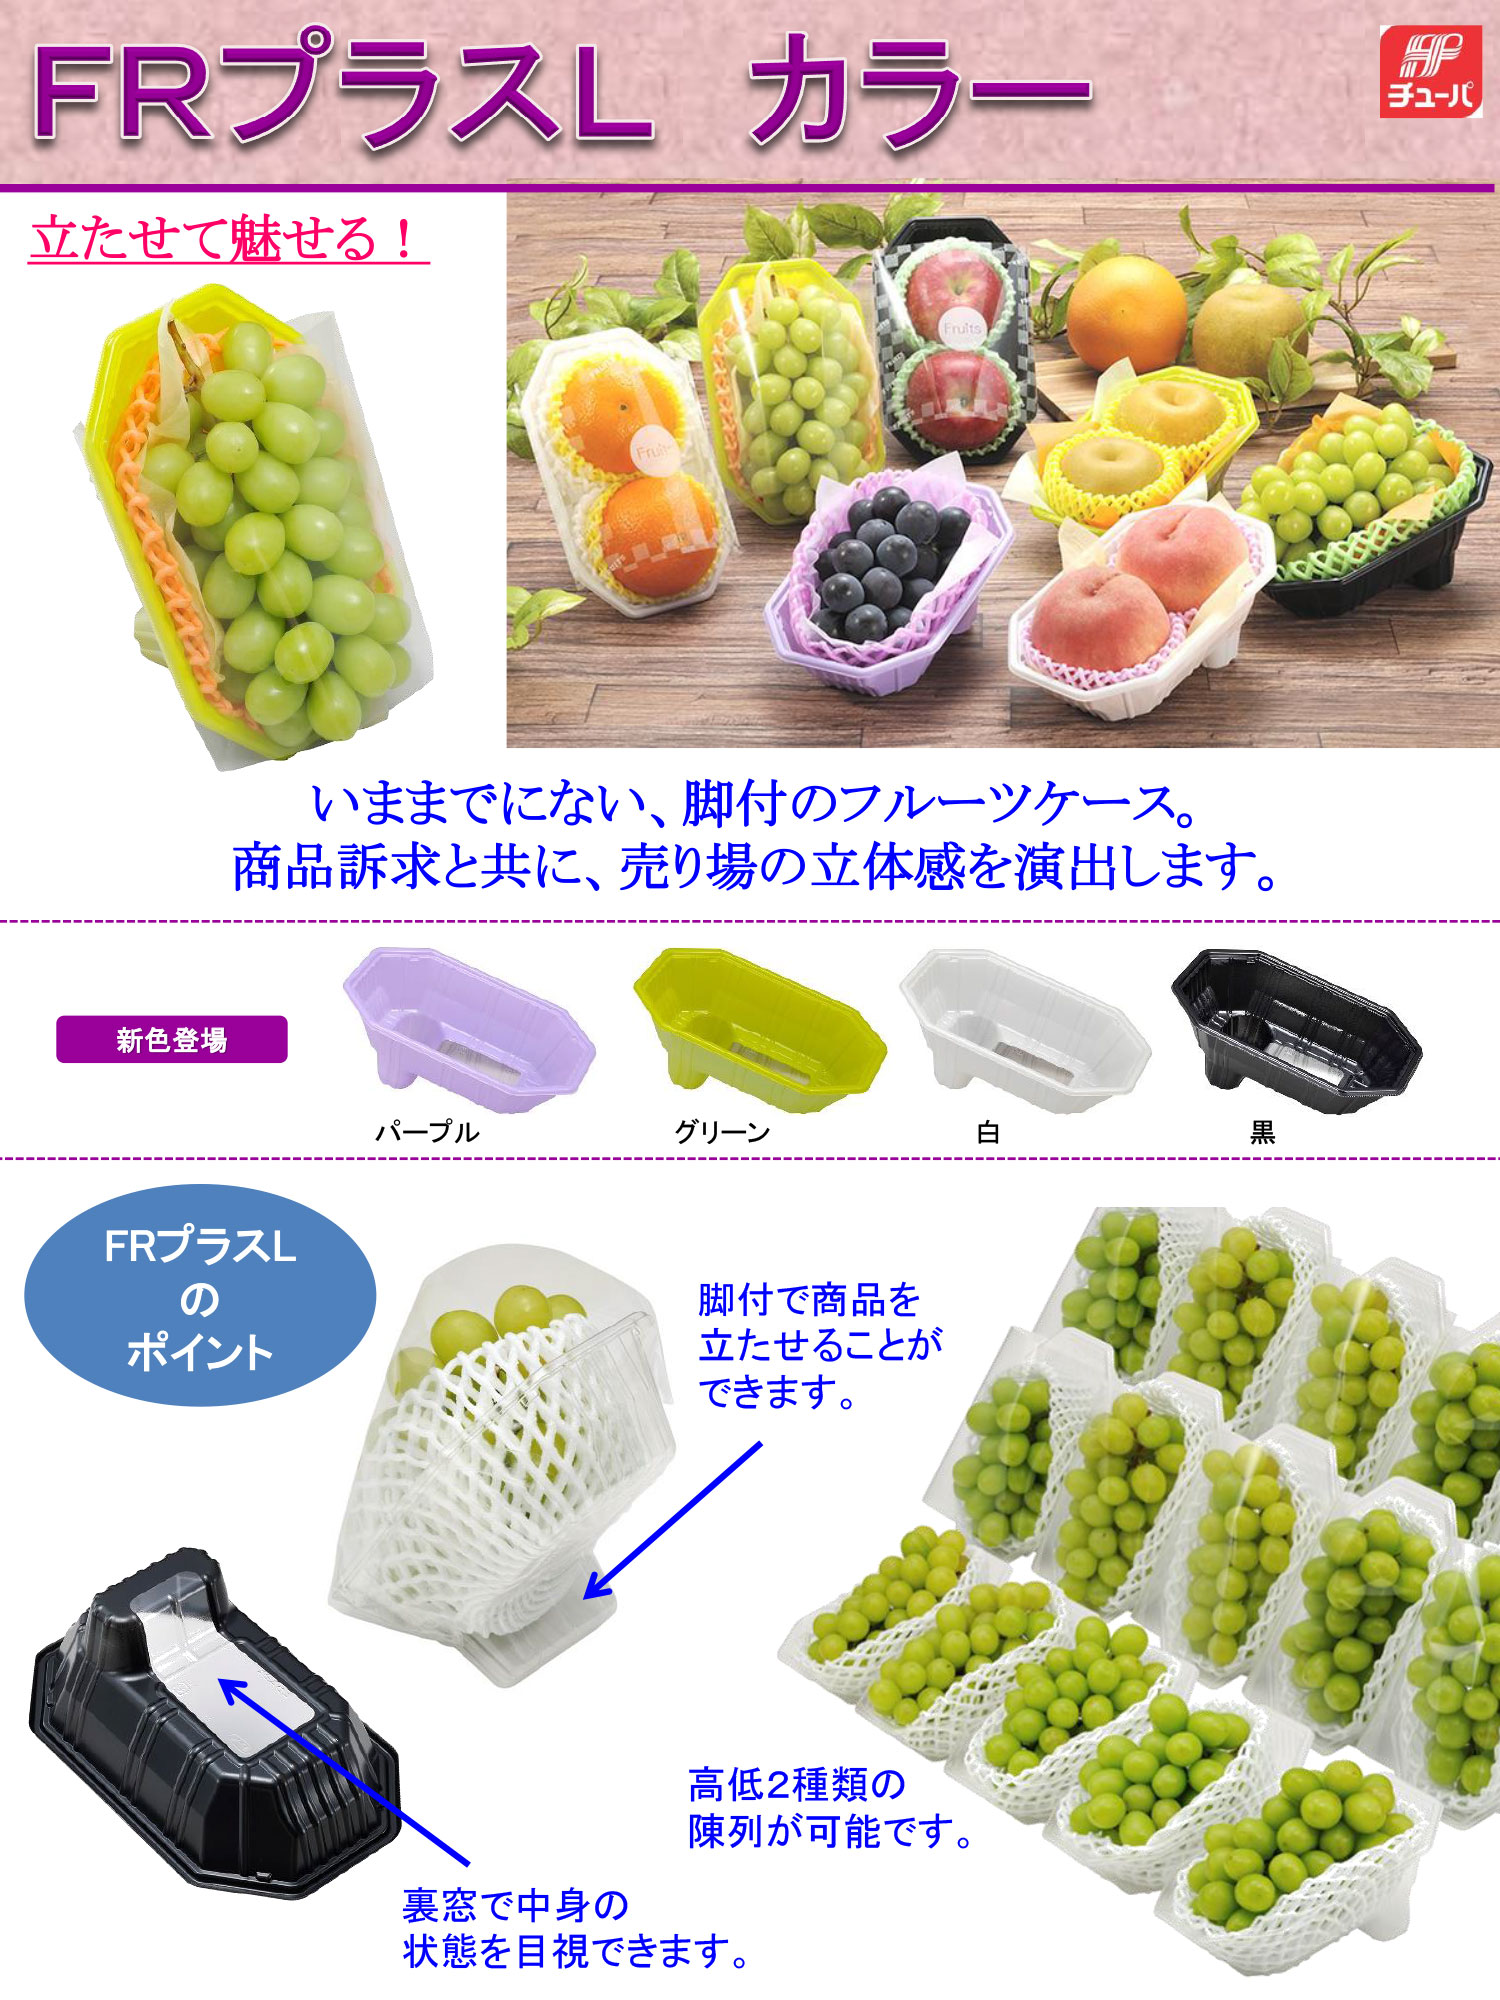 エフピコチューパwebカタログ | 野菜・フルーツパッケージとシール印刷